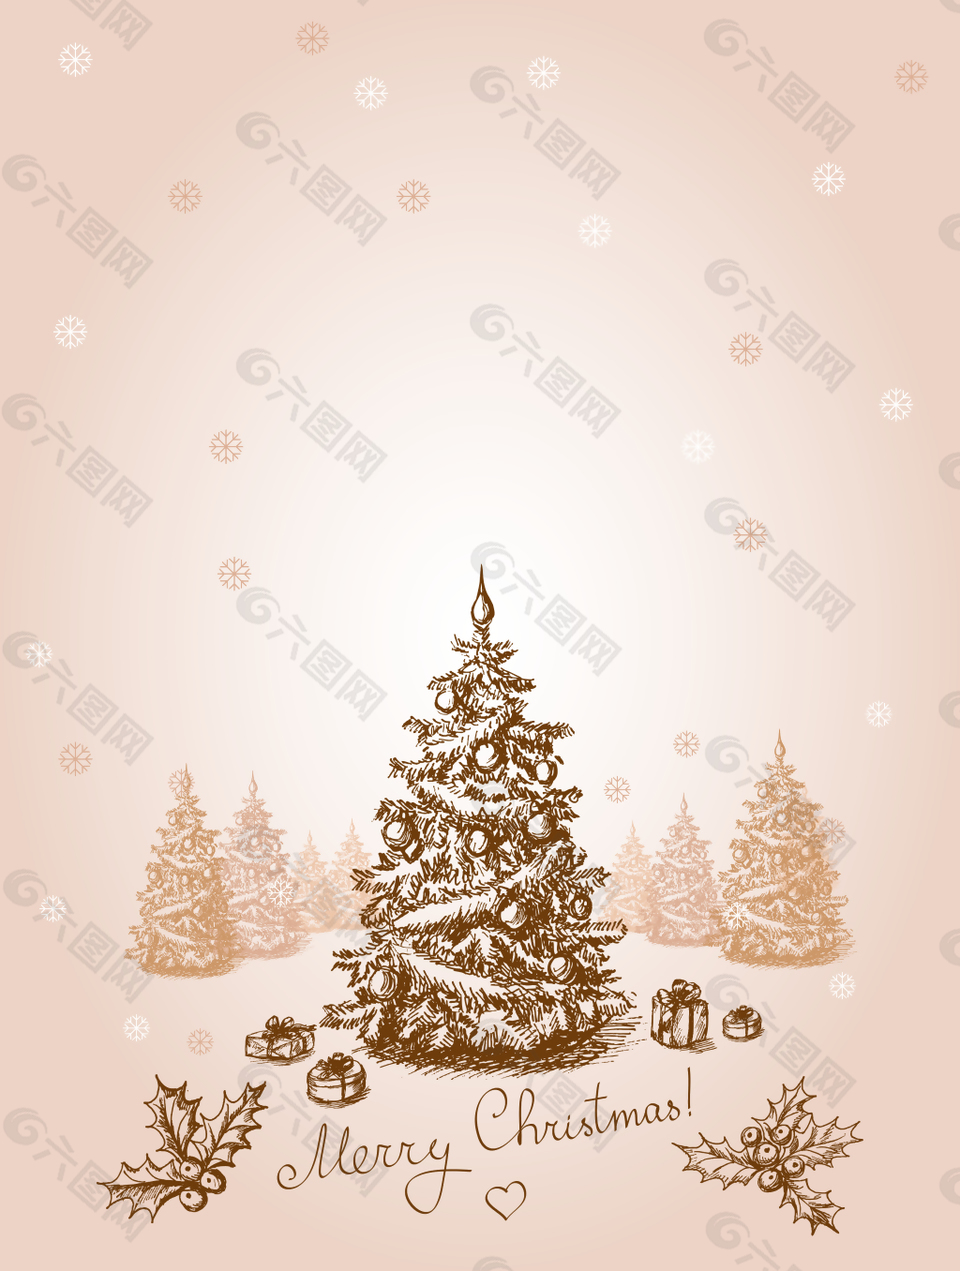 矢量淡色圣诞树手绘背景素材